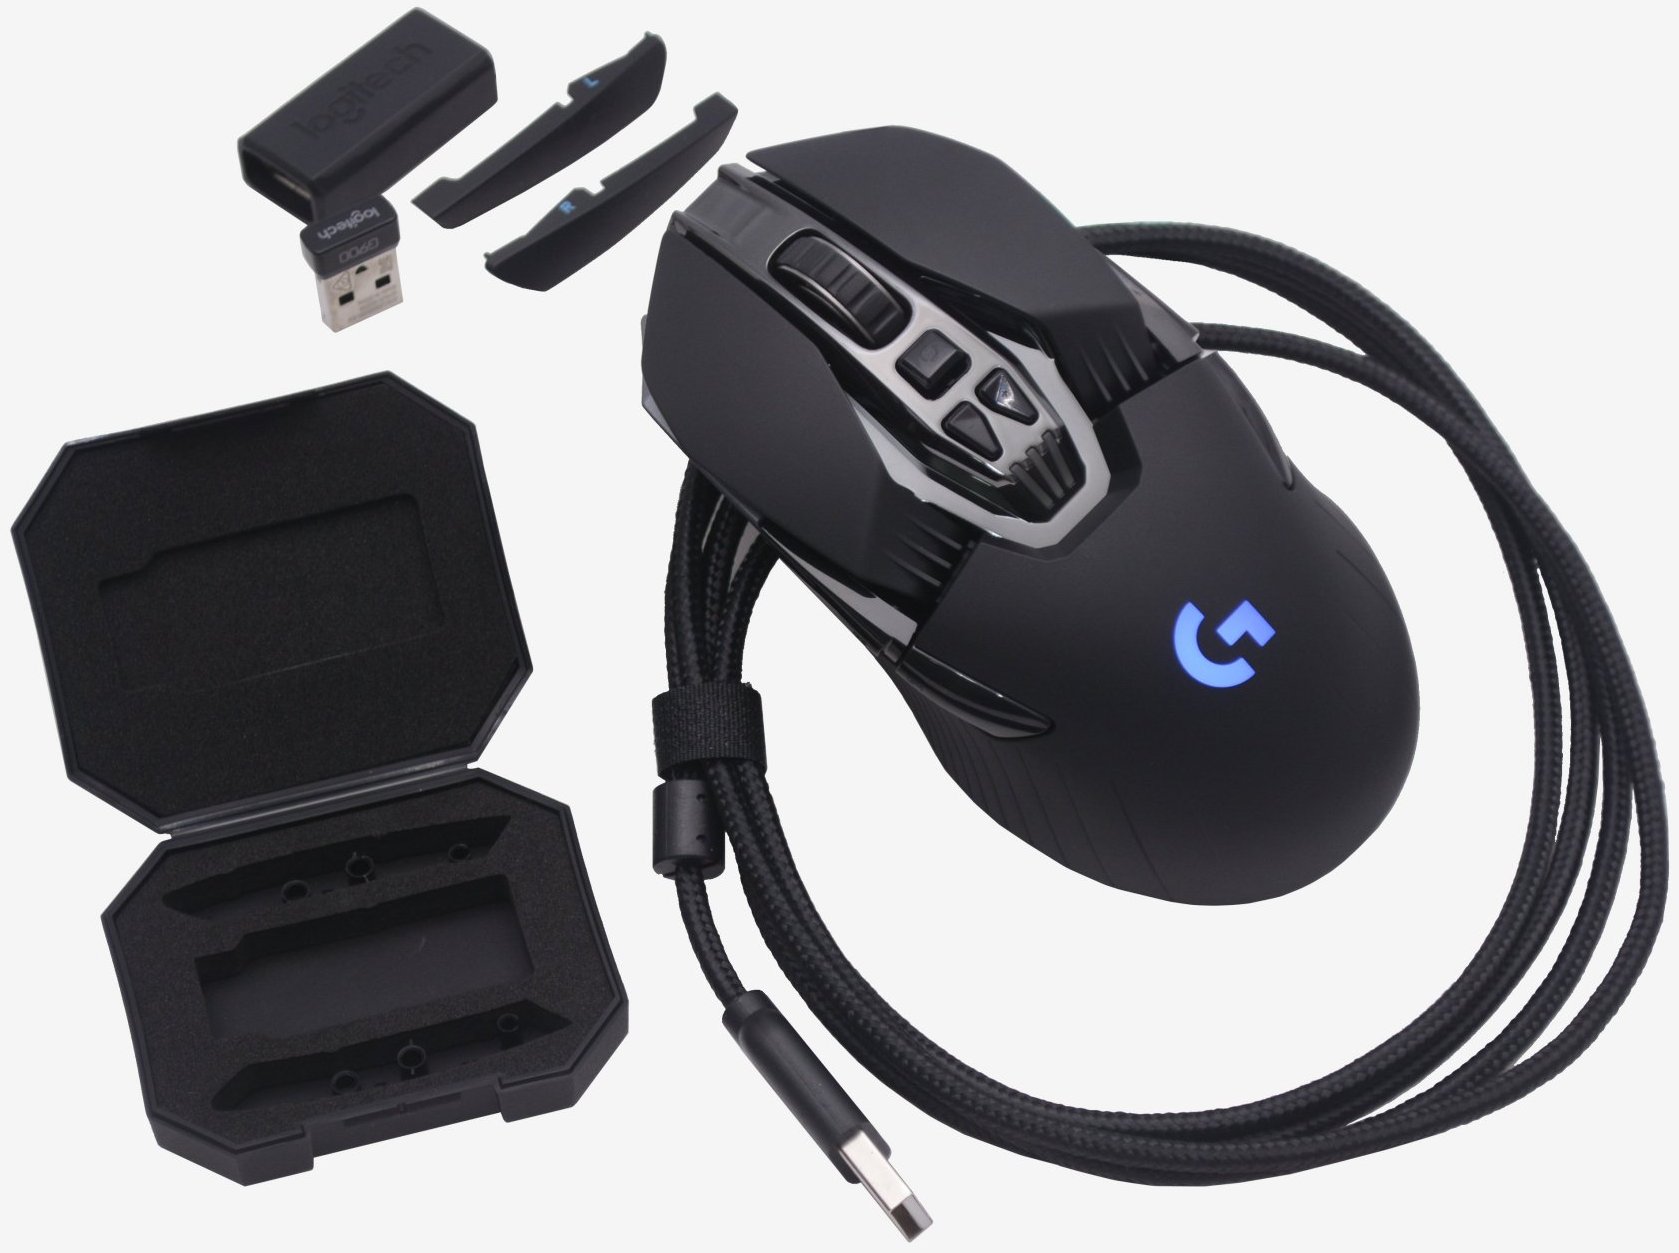 neden Çevrili koku  Logitech G900 Chaos Spectrum Wireless Gaming Mouse Review | TechSpot